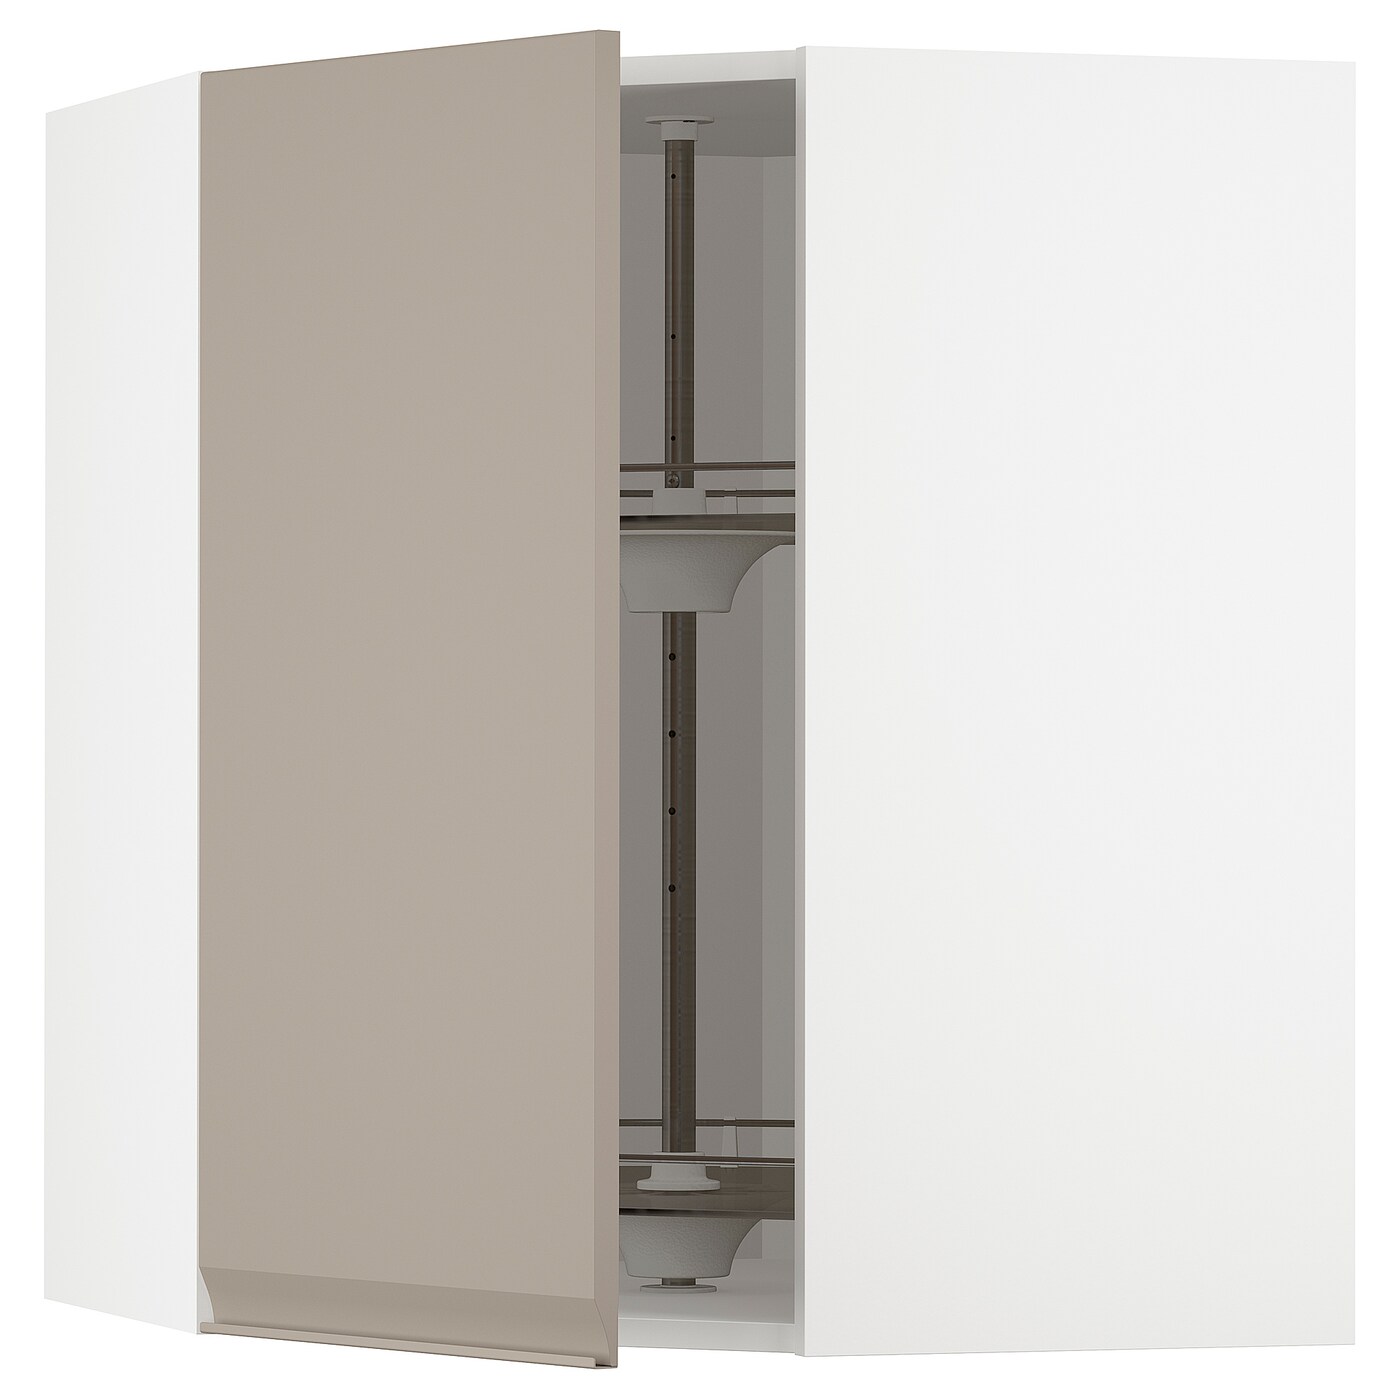 Угловой навесной шкаф с каруселью - METOD  IKEA/  МЕТОД ИКЕА, 80х68 см, белый/светло-коричневый